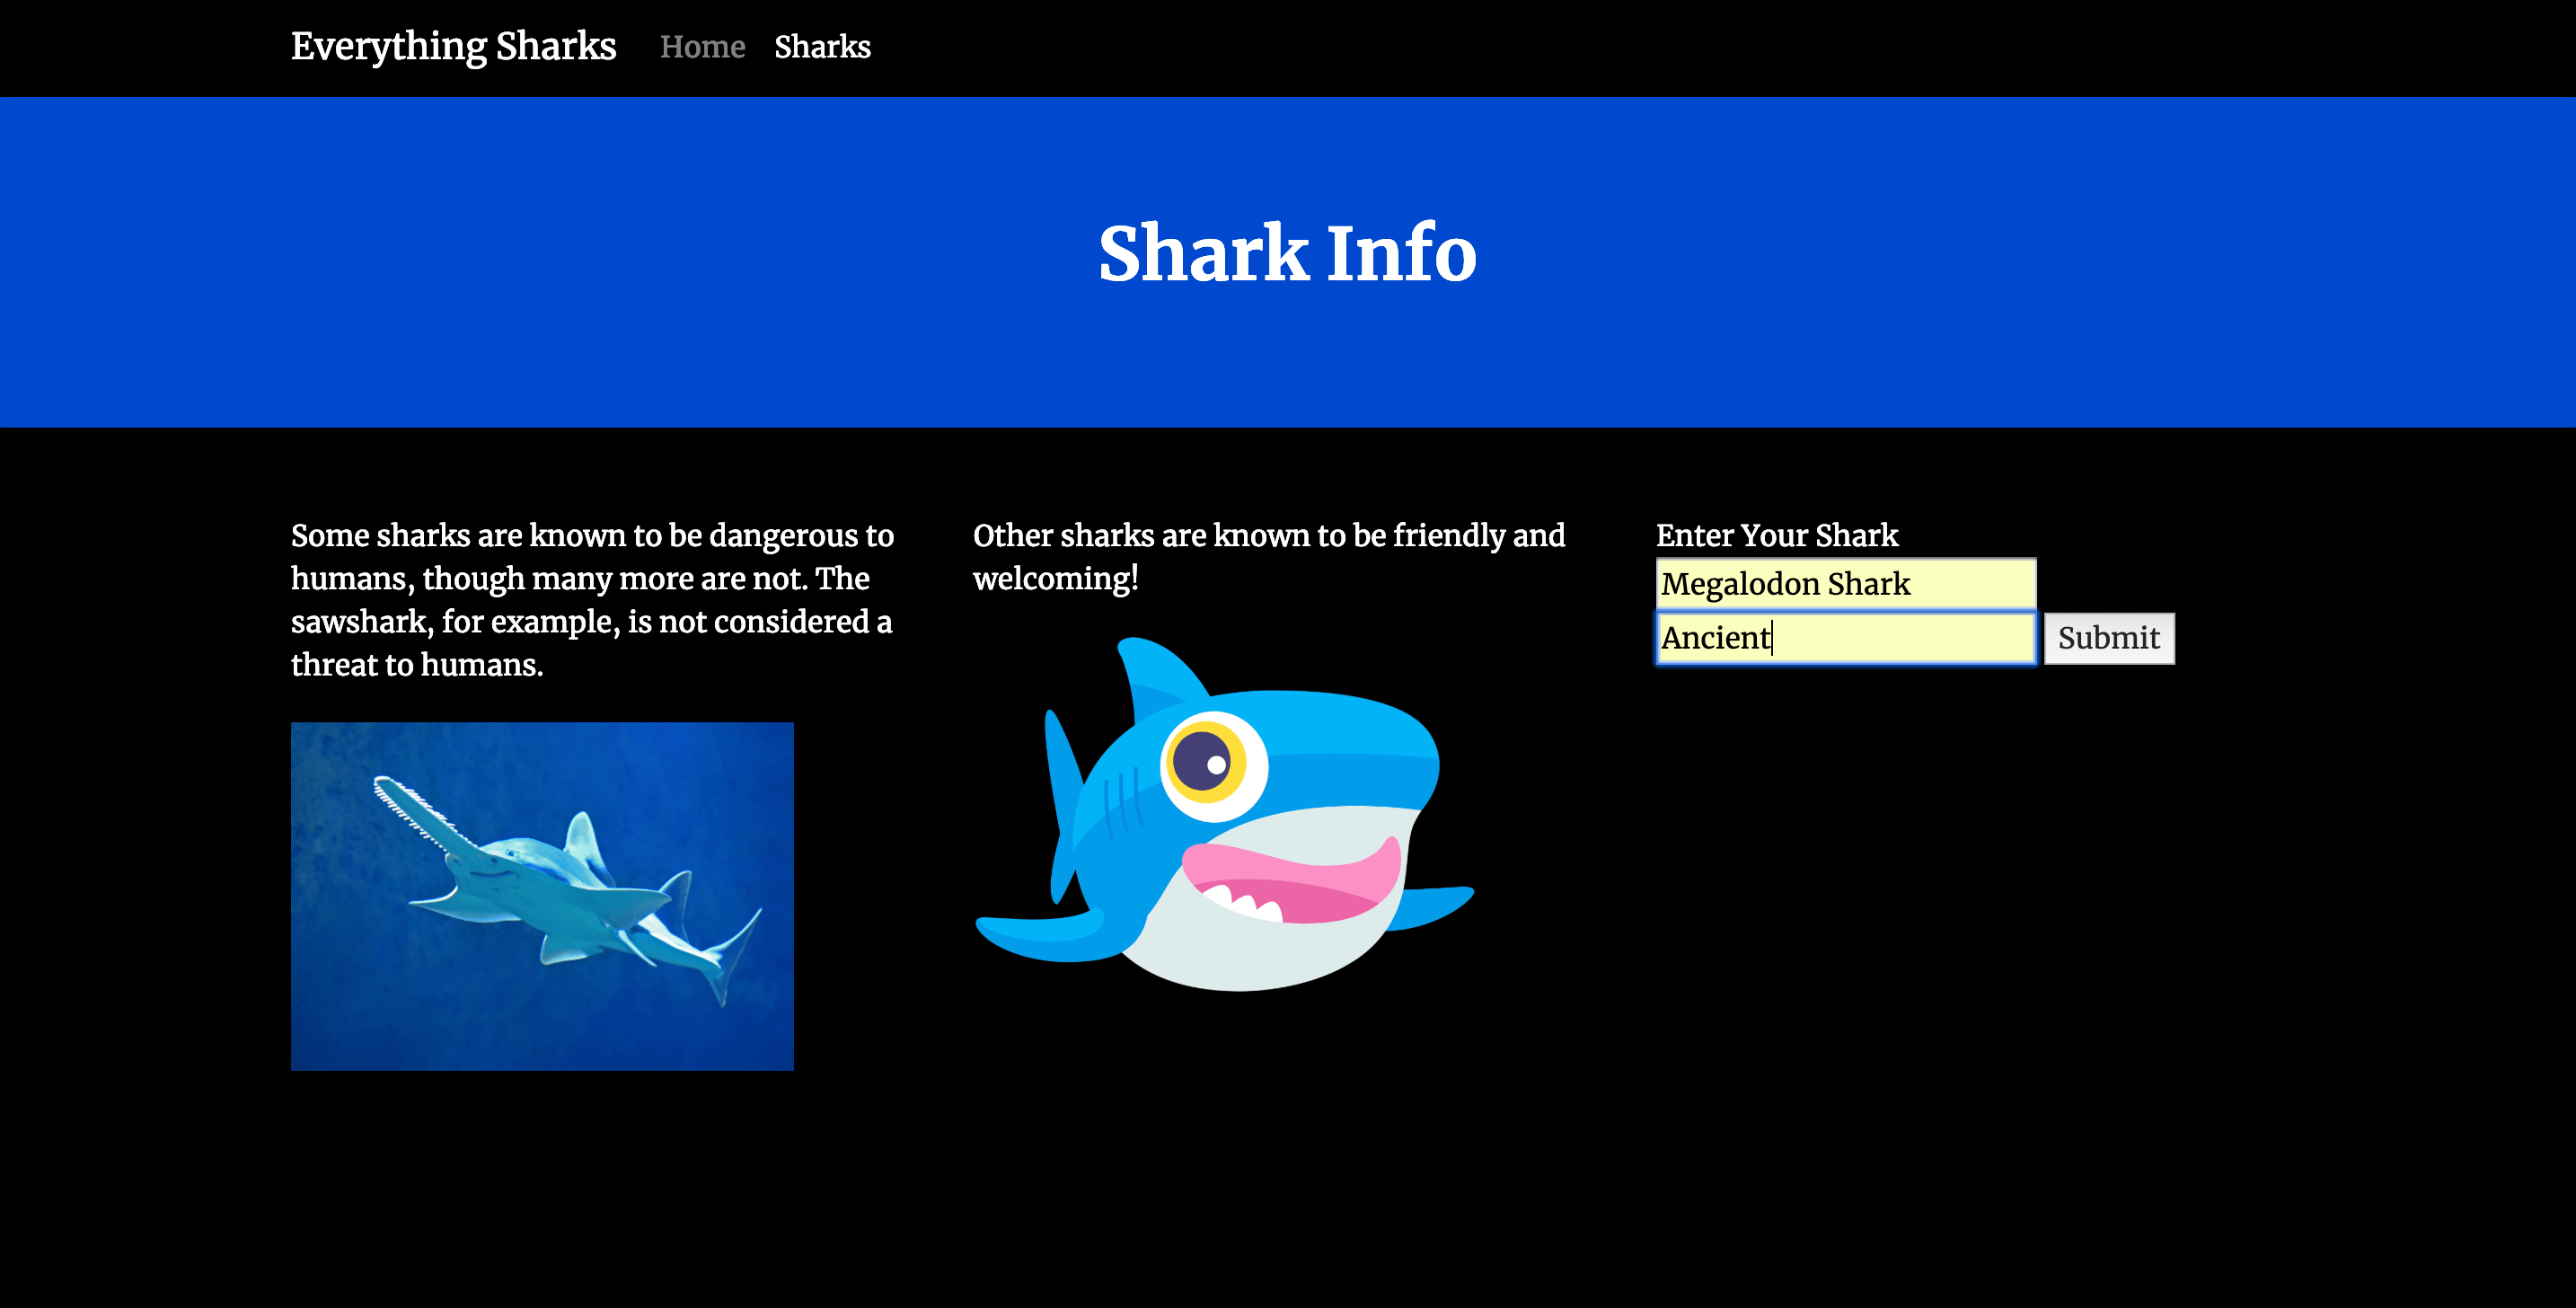 Filled Shark Form